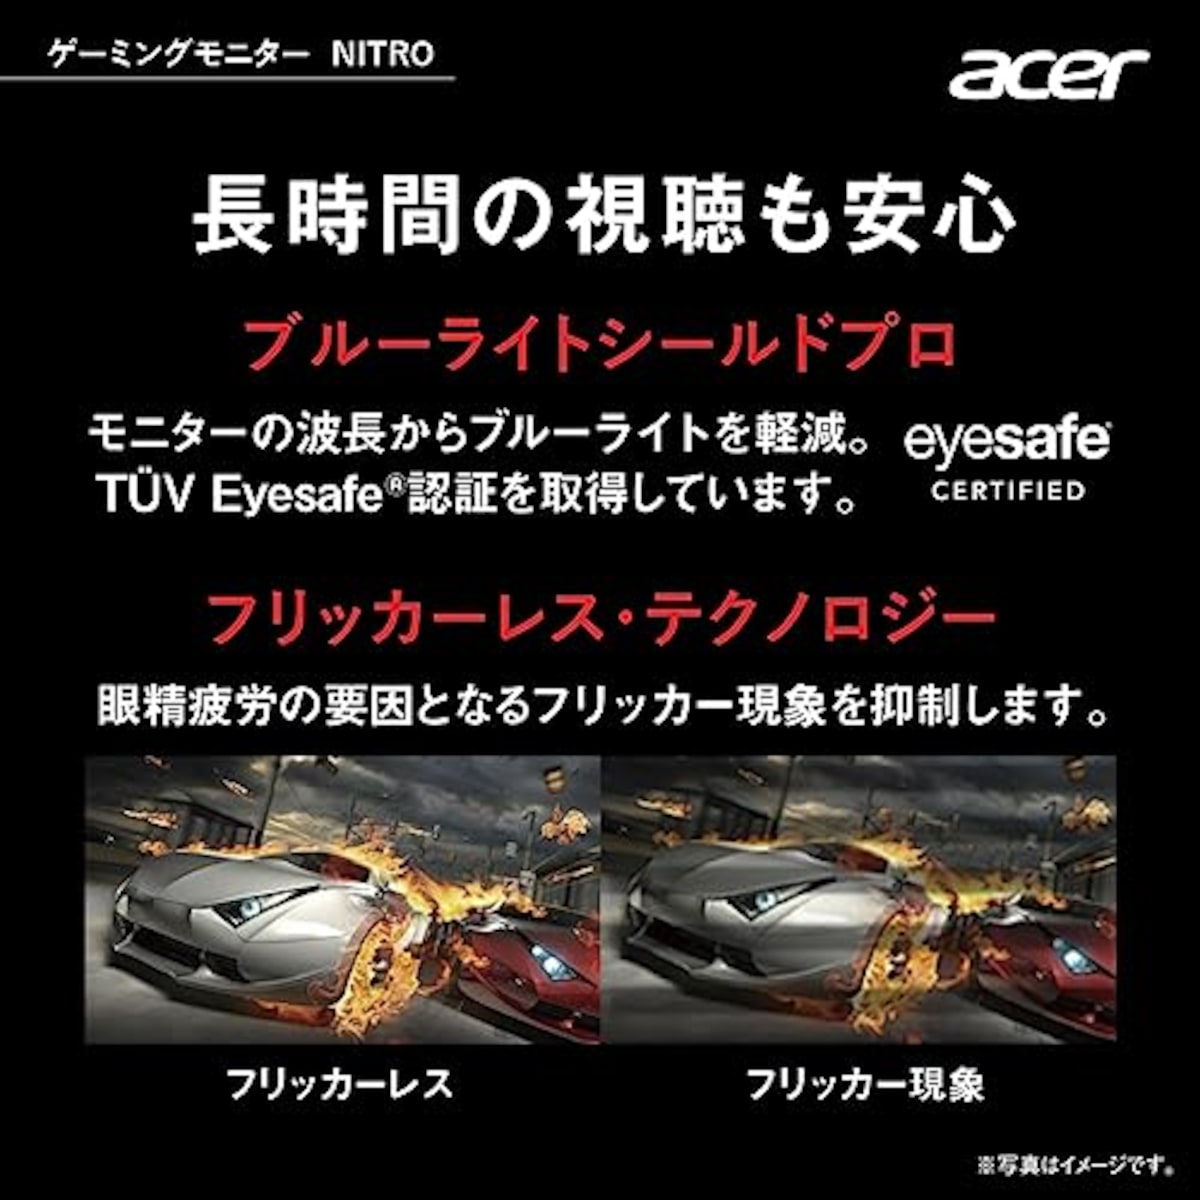  日本エイサー 【Amazon.co.jp限定】Acer ゲーミングモニター Nitro KG242YS3bmiipx 23.8インチ VA 非光沢 フルHD 180Hz 1ms(VRB) HDMI 2.0 DisplayPort VESAマウント対応 スピーカー内蔵 ヘッドホン端子 AMD FreeSync Premium画像5 